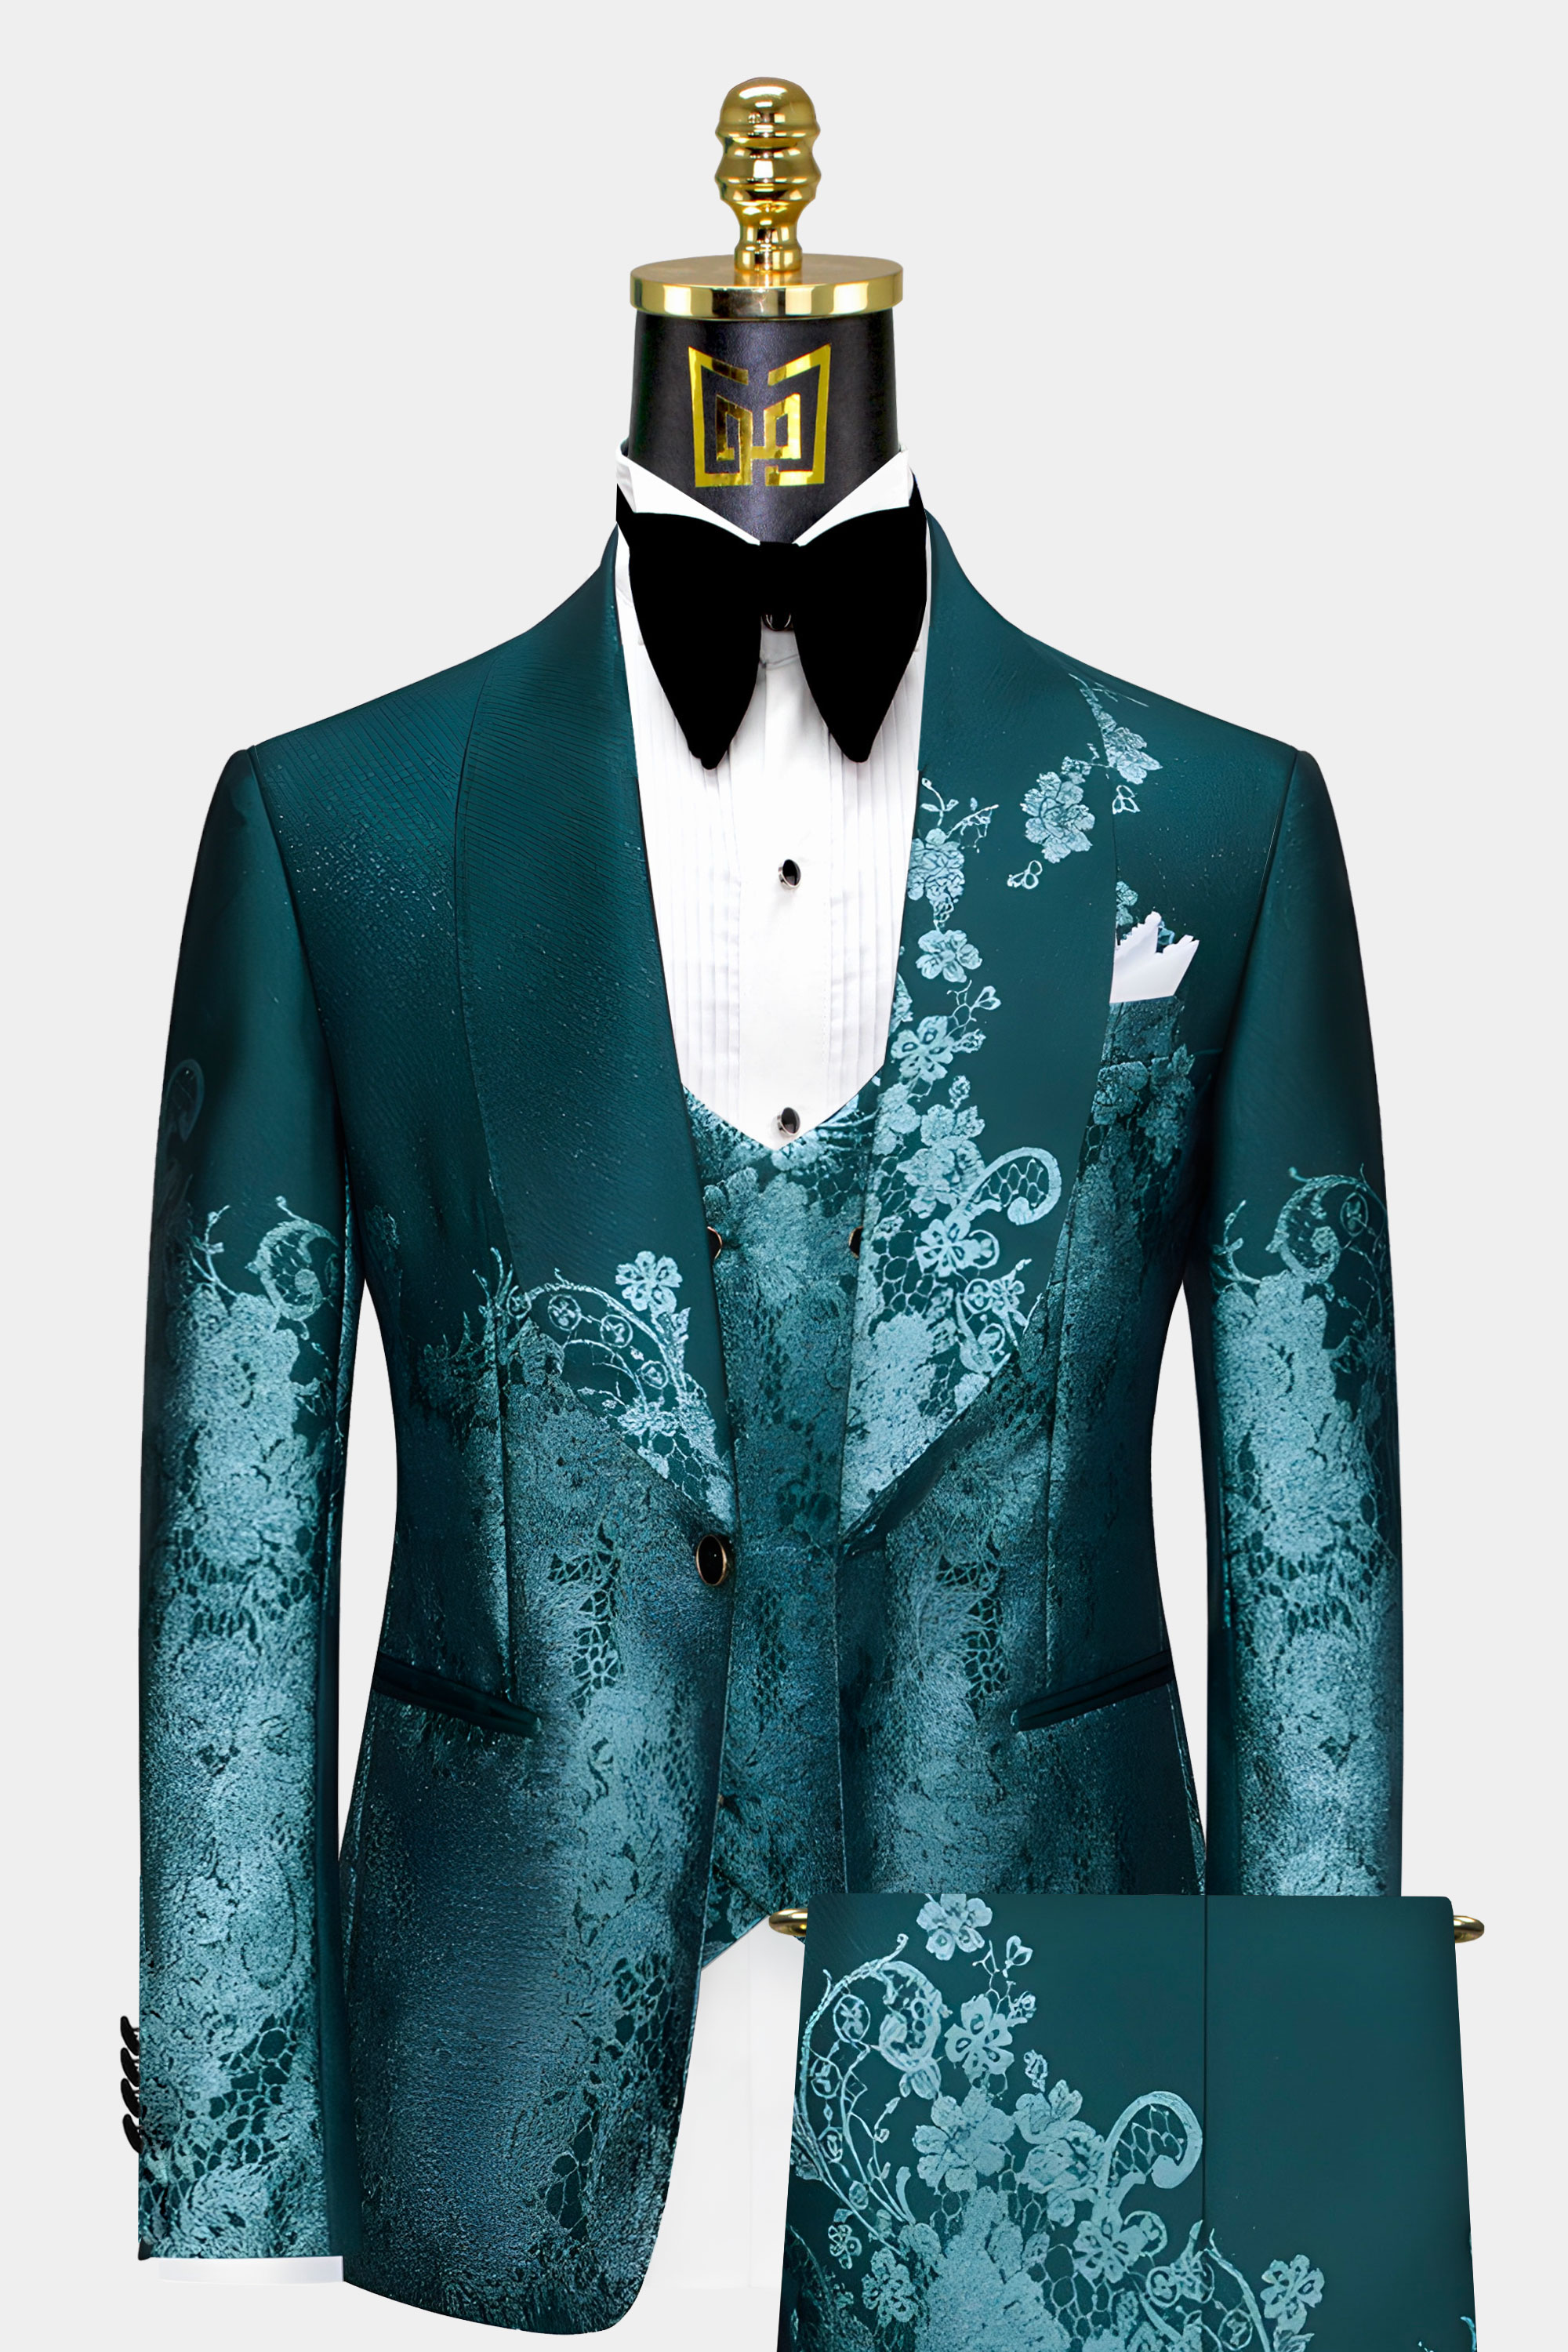 Mens-Teal-Floral-Suit-Groom-Wedding-Teal-Prom-Tuxedo-from-Gentlemansguru.com